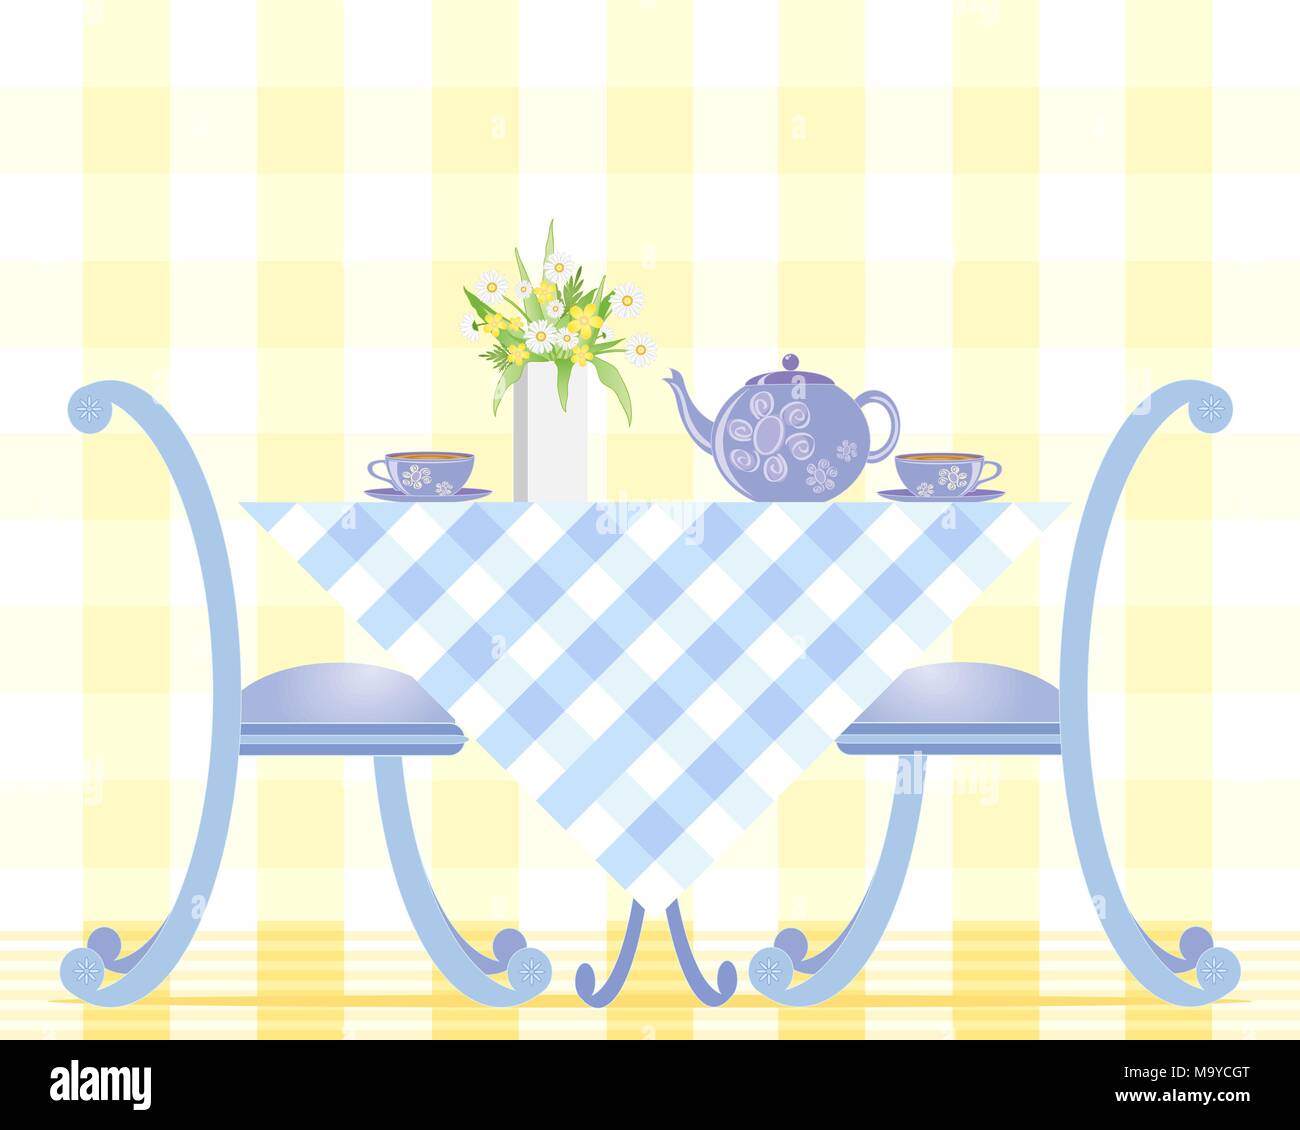 Una illustrazione di una tabella con tazze tè teiera e un vaso di margherite su una tovaglia gingham con due sedie su fondo giallo chiaro Illustrazione Vettoriale